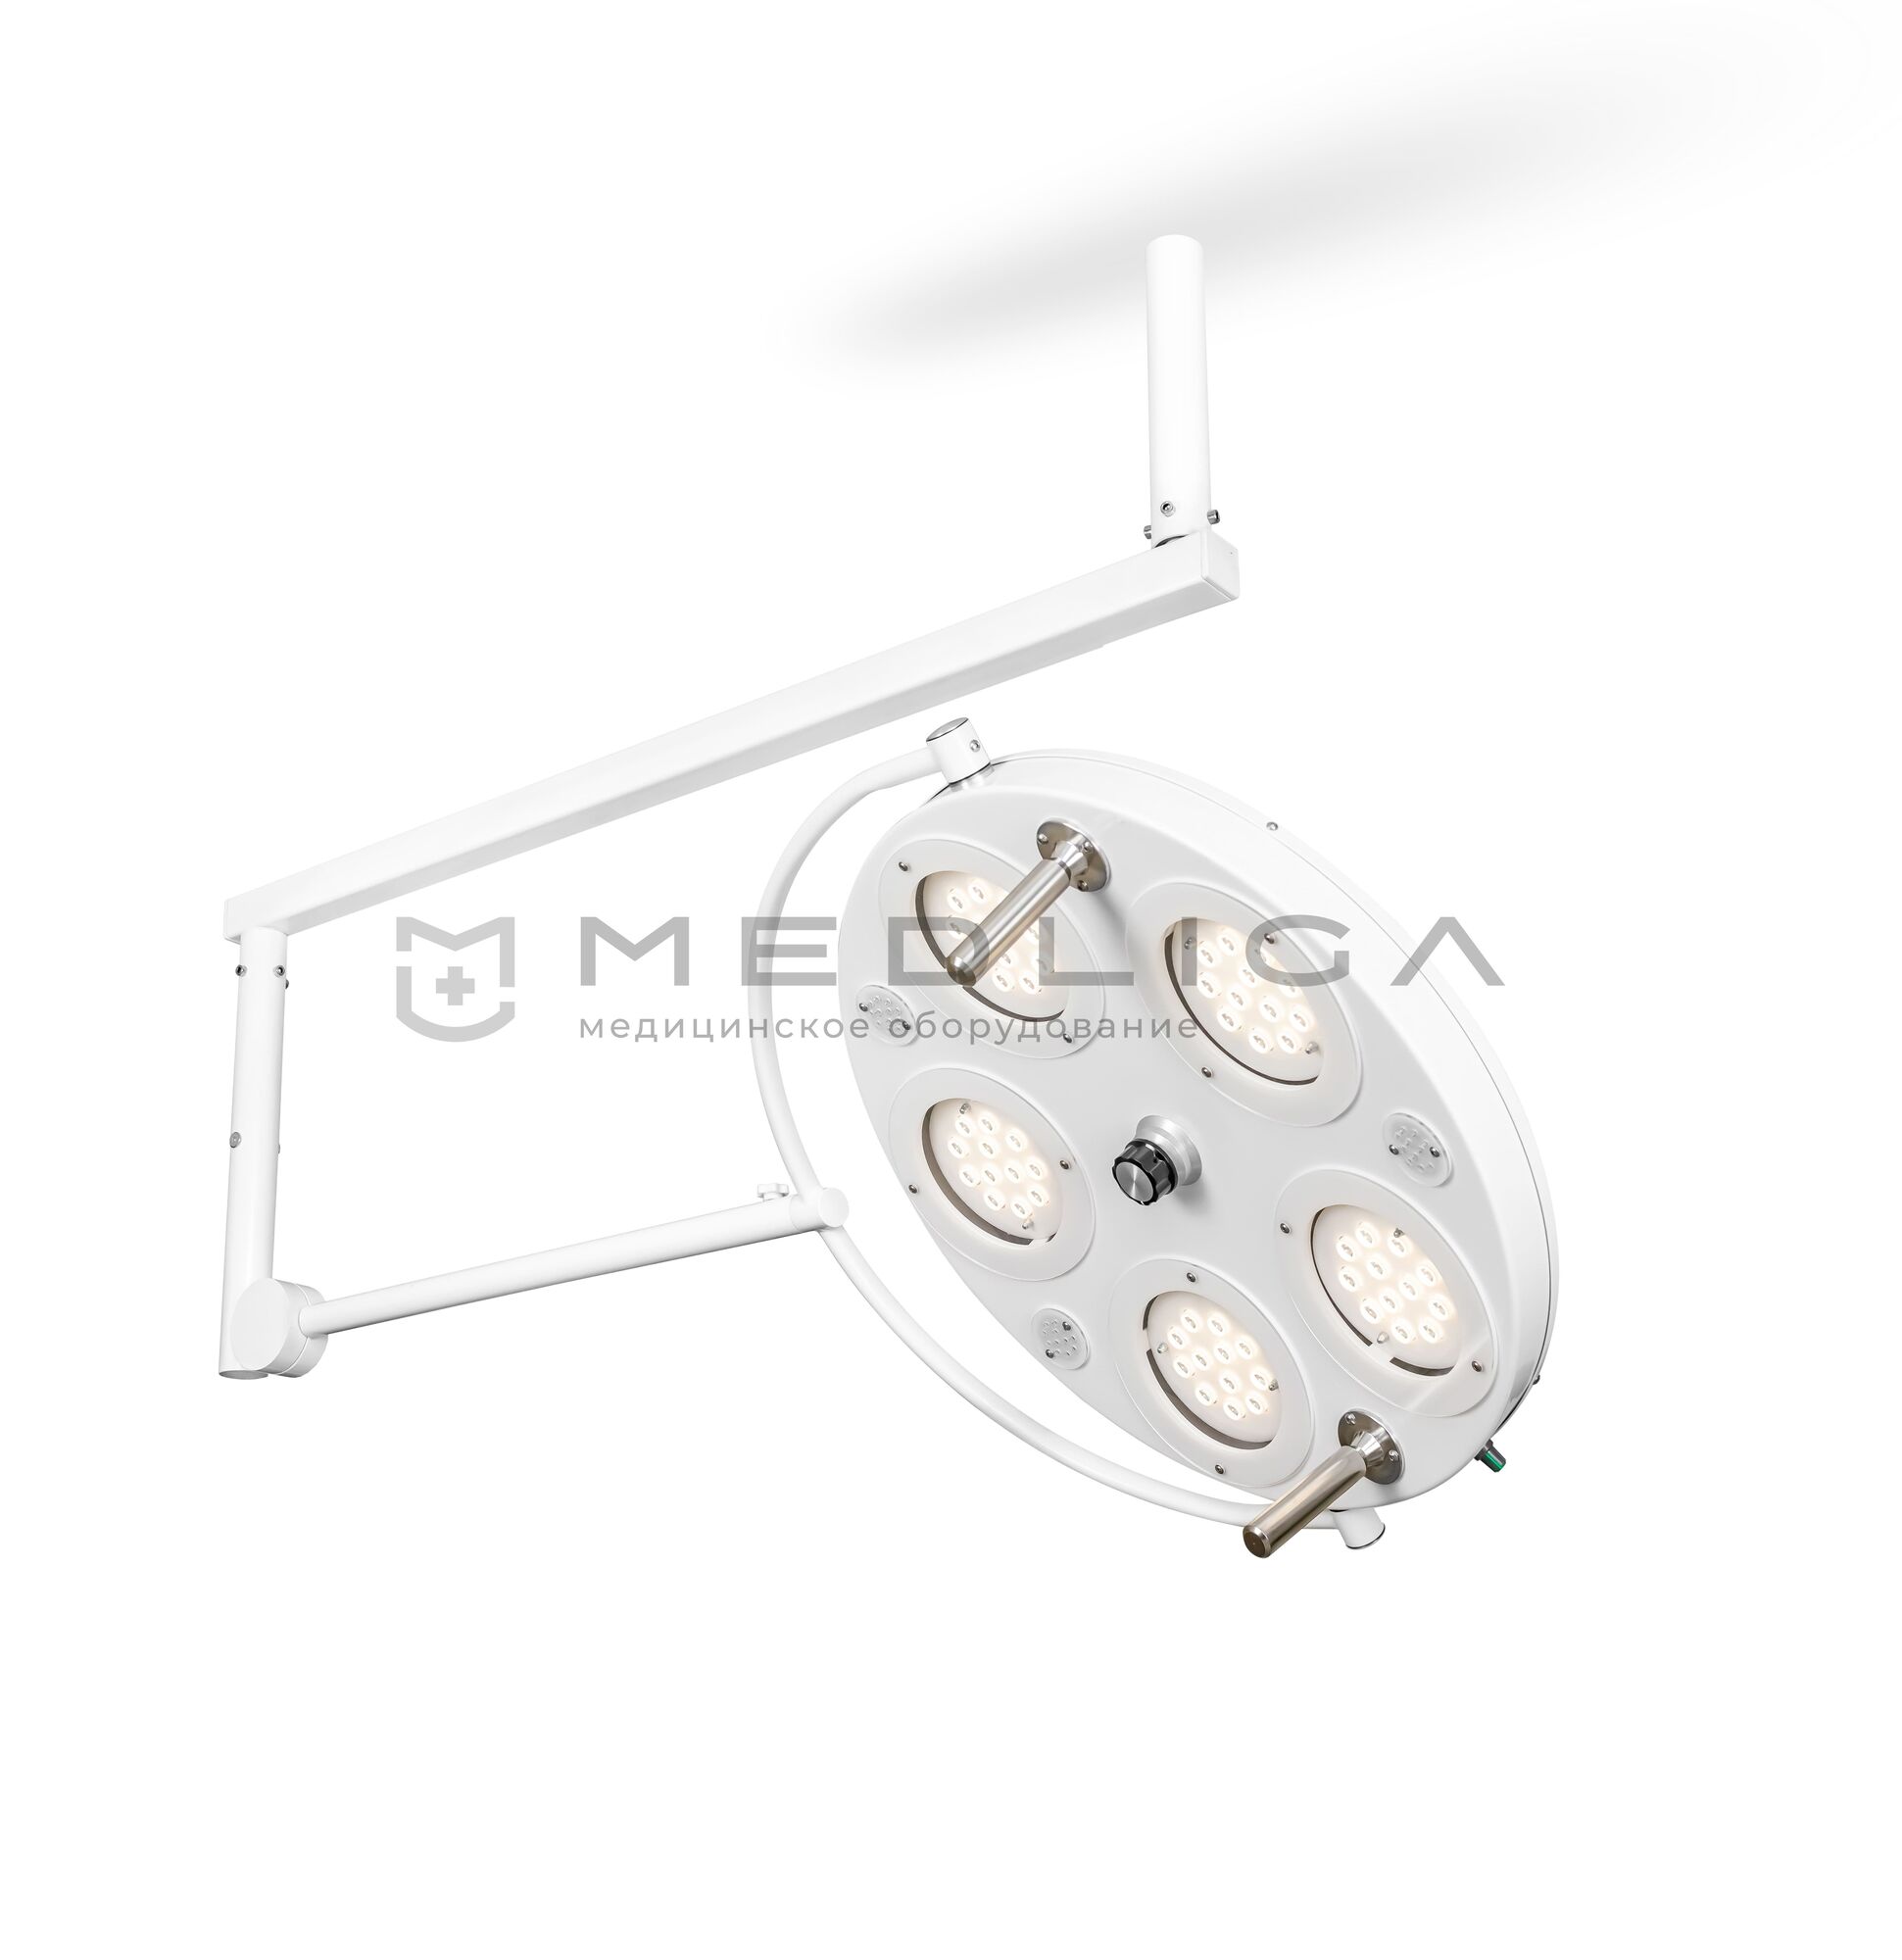 Медицинский хирургический светильник FotonFly 5М